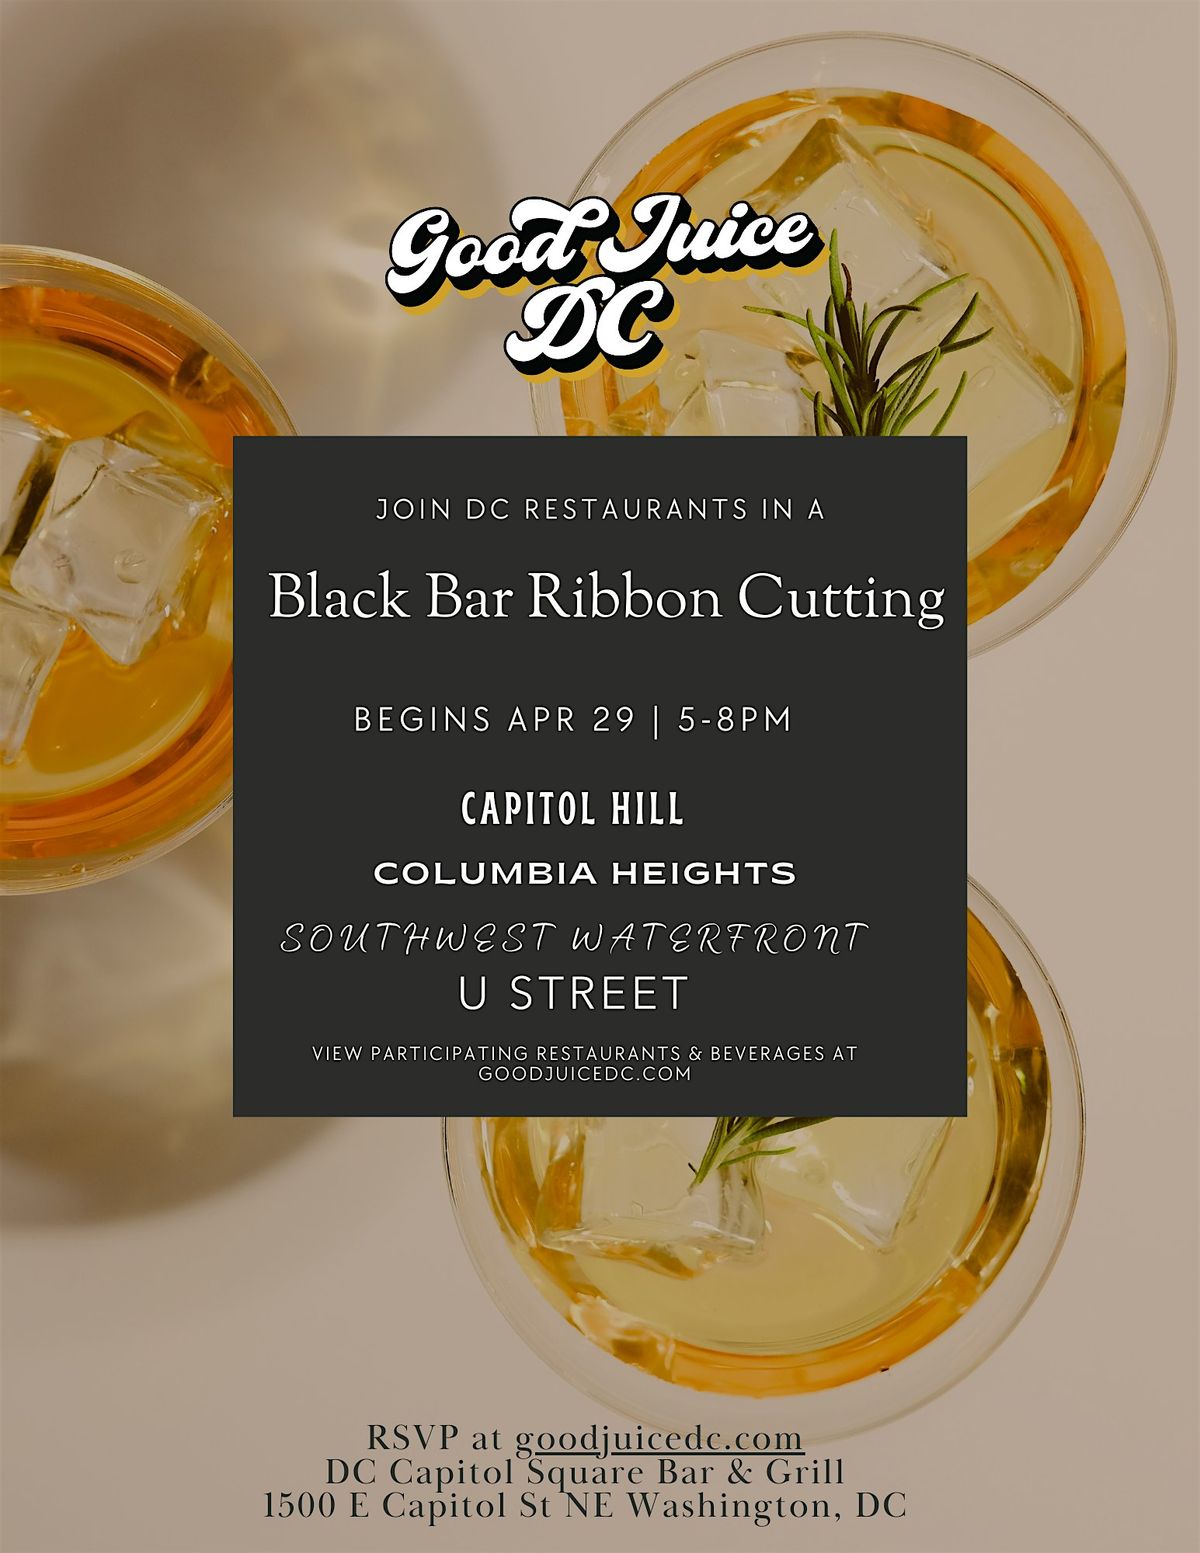 Join DC Restaurants in a Black Bar Ribbon Cutting